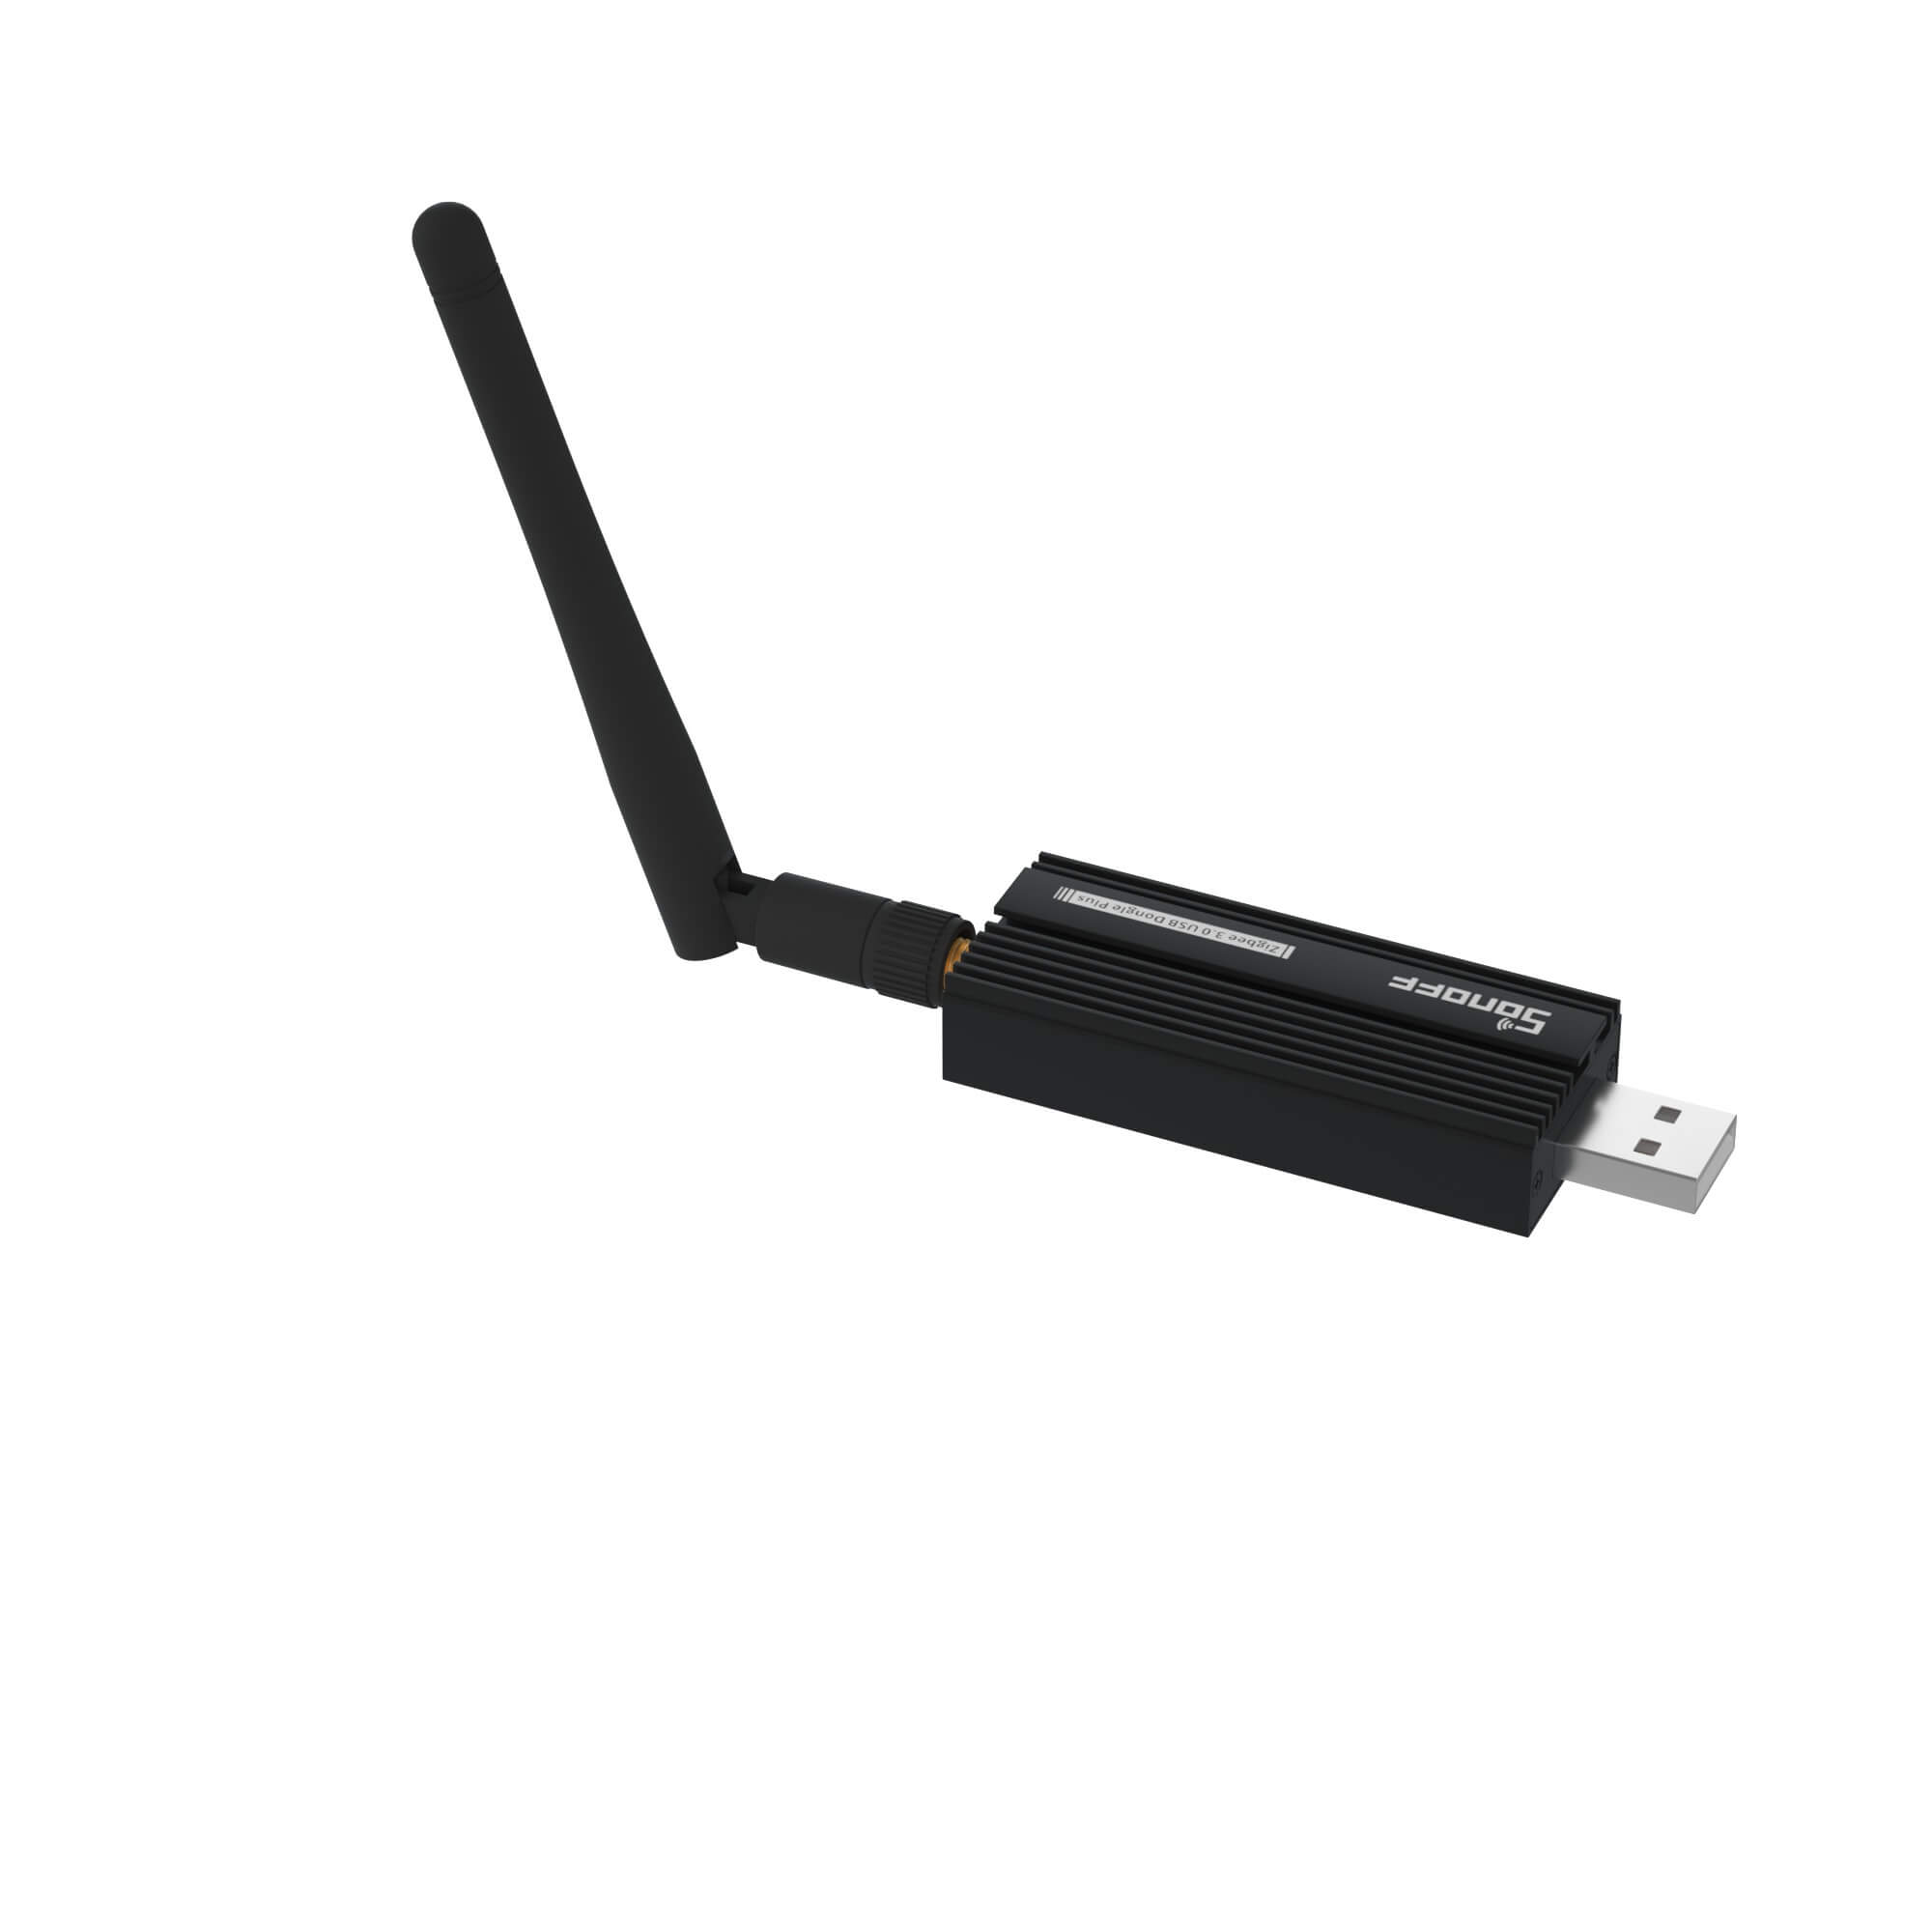  Wireless USB Dongle,Universal Zigbee Gateway Adapter